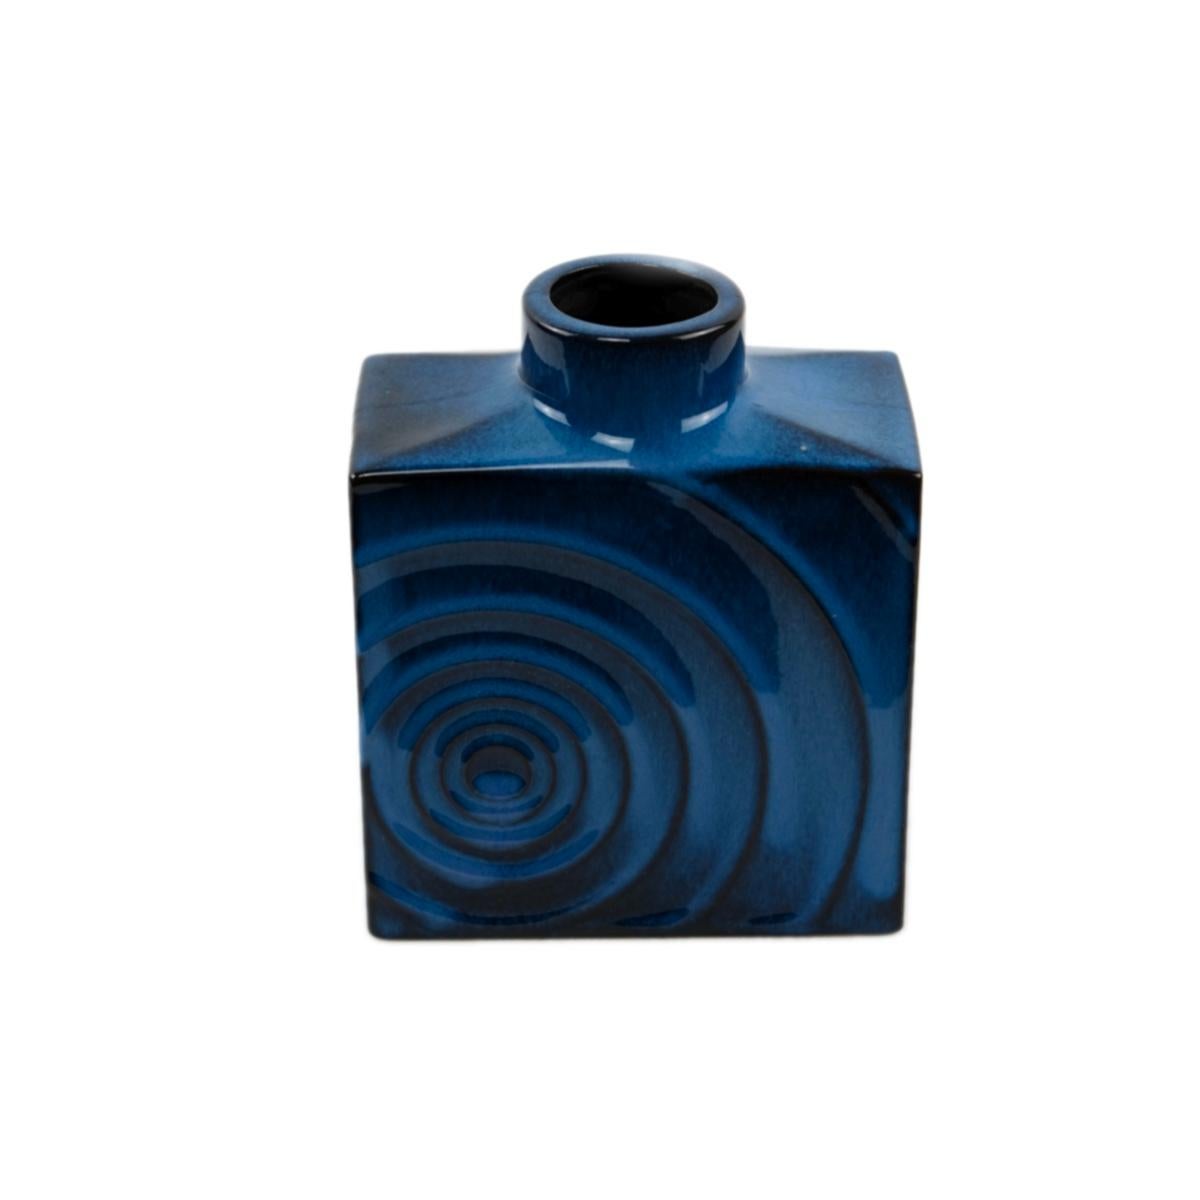 Set of 3 Cari Zalloni for Steuler ceramic blue-black „ Zyklon“ vases  1060s 2